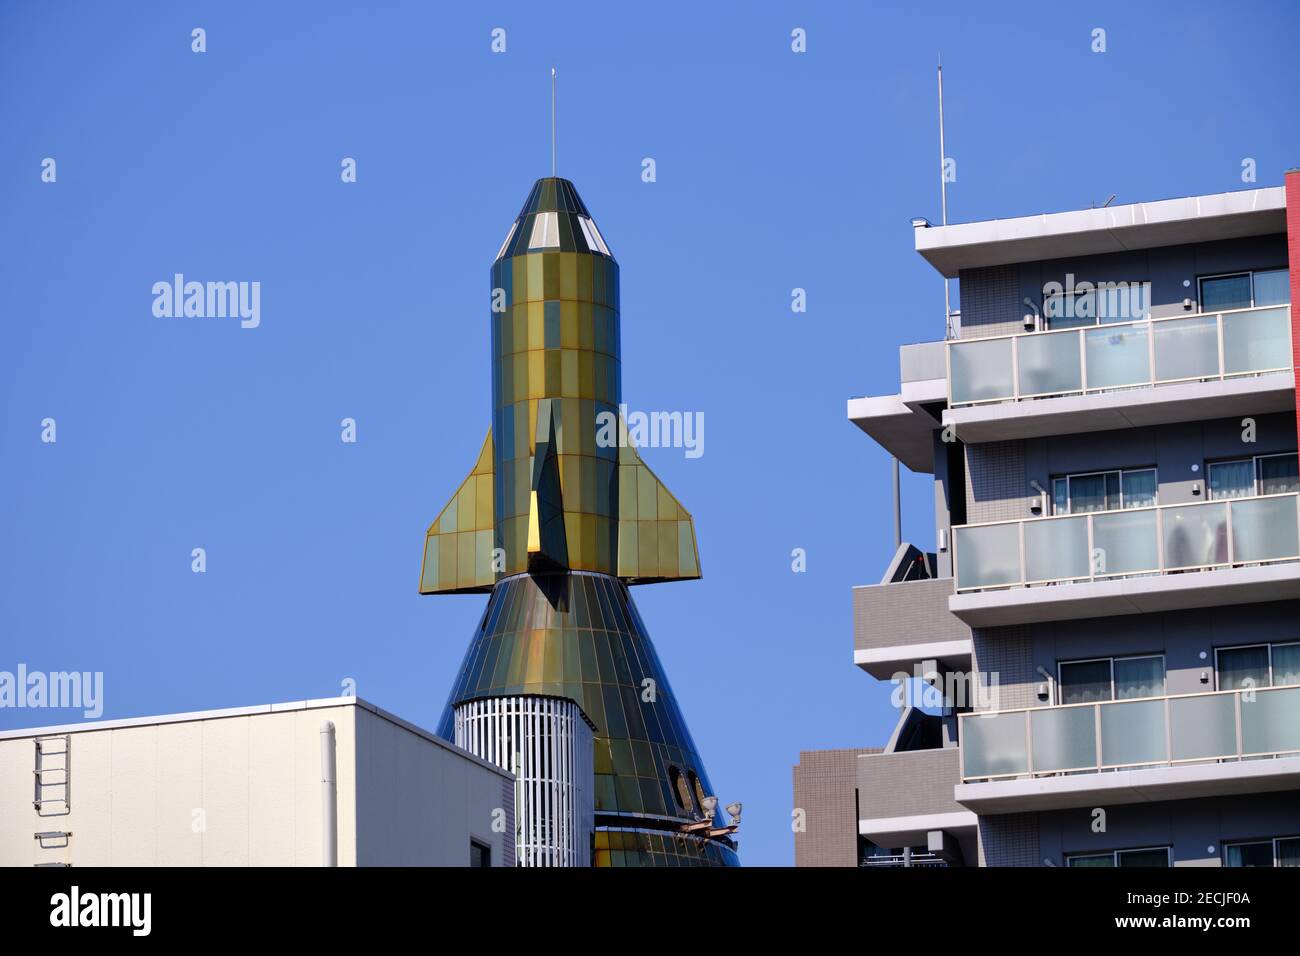 The Omiya Rocket Building, viewed of the top as seen between more regular buildings in Saitama Japan Stock Photo